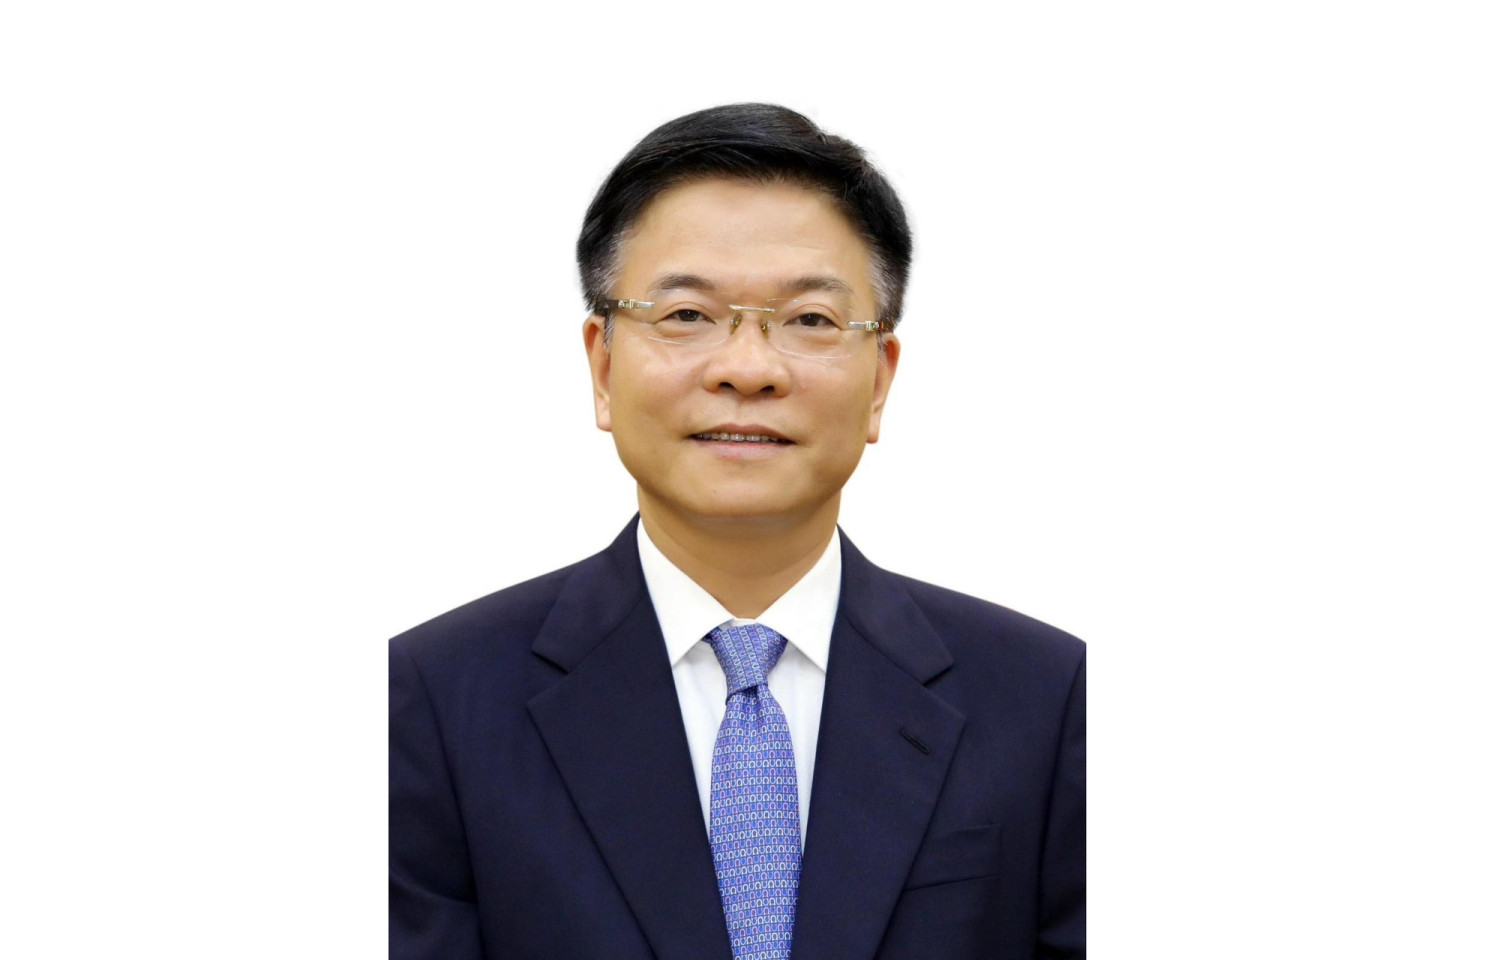 Bộ trưởng Bộ Tư pháp Lê Thành Long được Quốc hội phê chuẩn bổ nhiệm làm Phó Thủ tướng